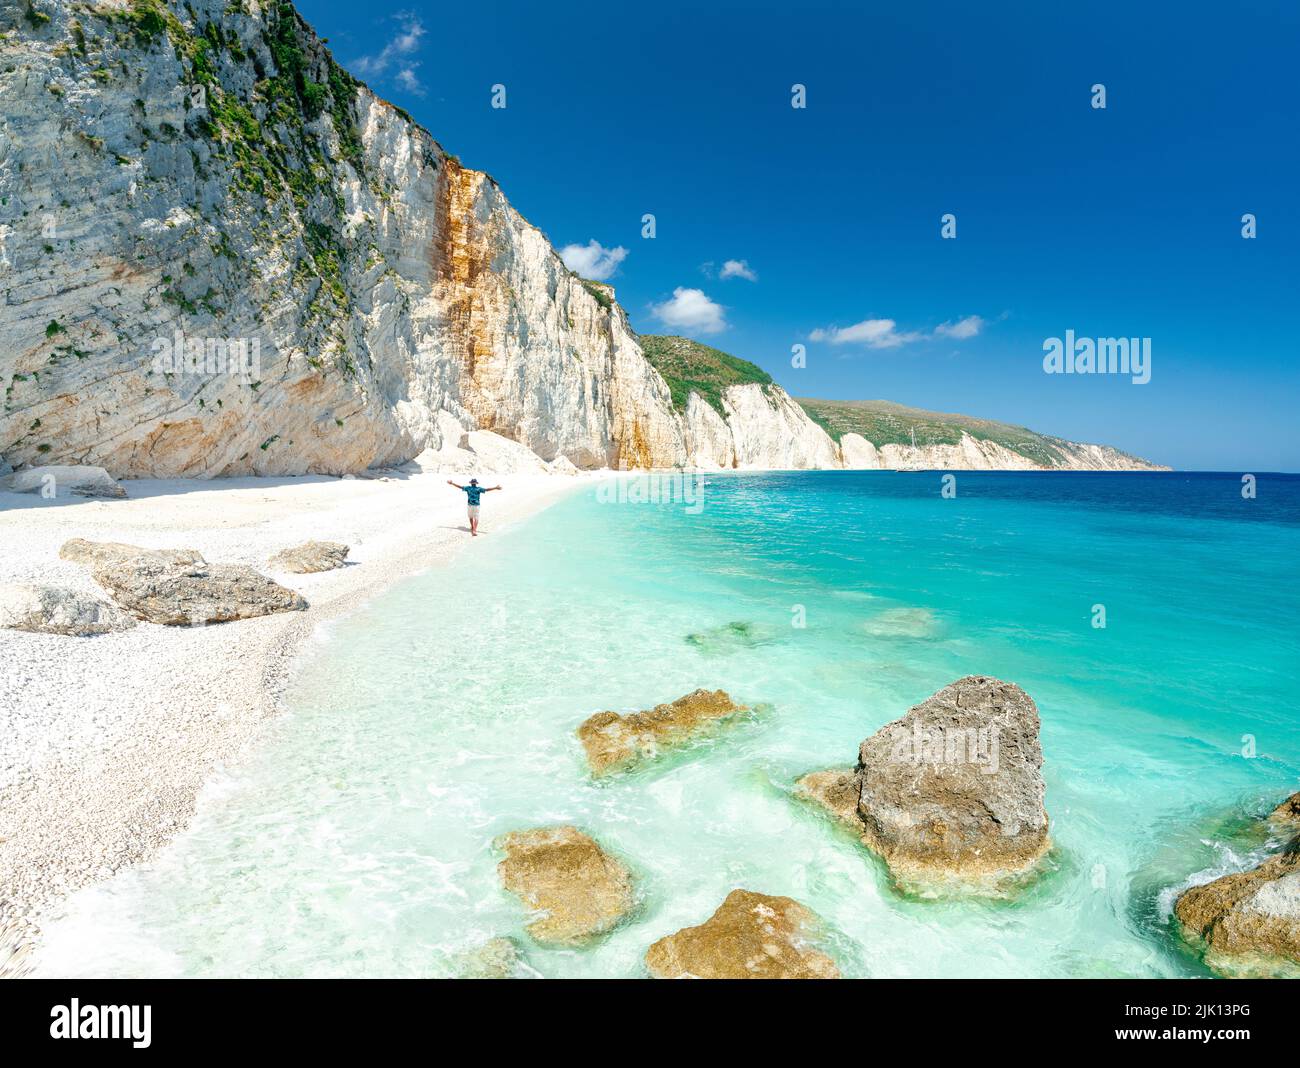 Vista aerea di un uomo allegro con le braccia distese ammirando il mare cristallino a Fteri Beach, Cefalonia, Isole IONIE, Isole Greche, Grecia, Europa Foto Stock